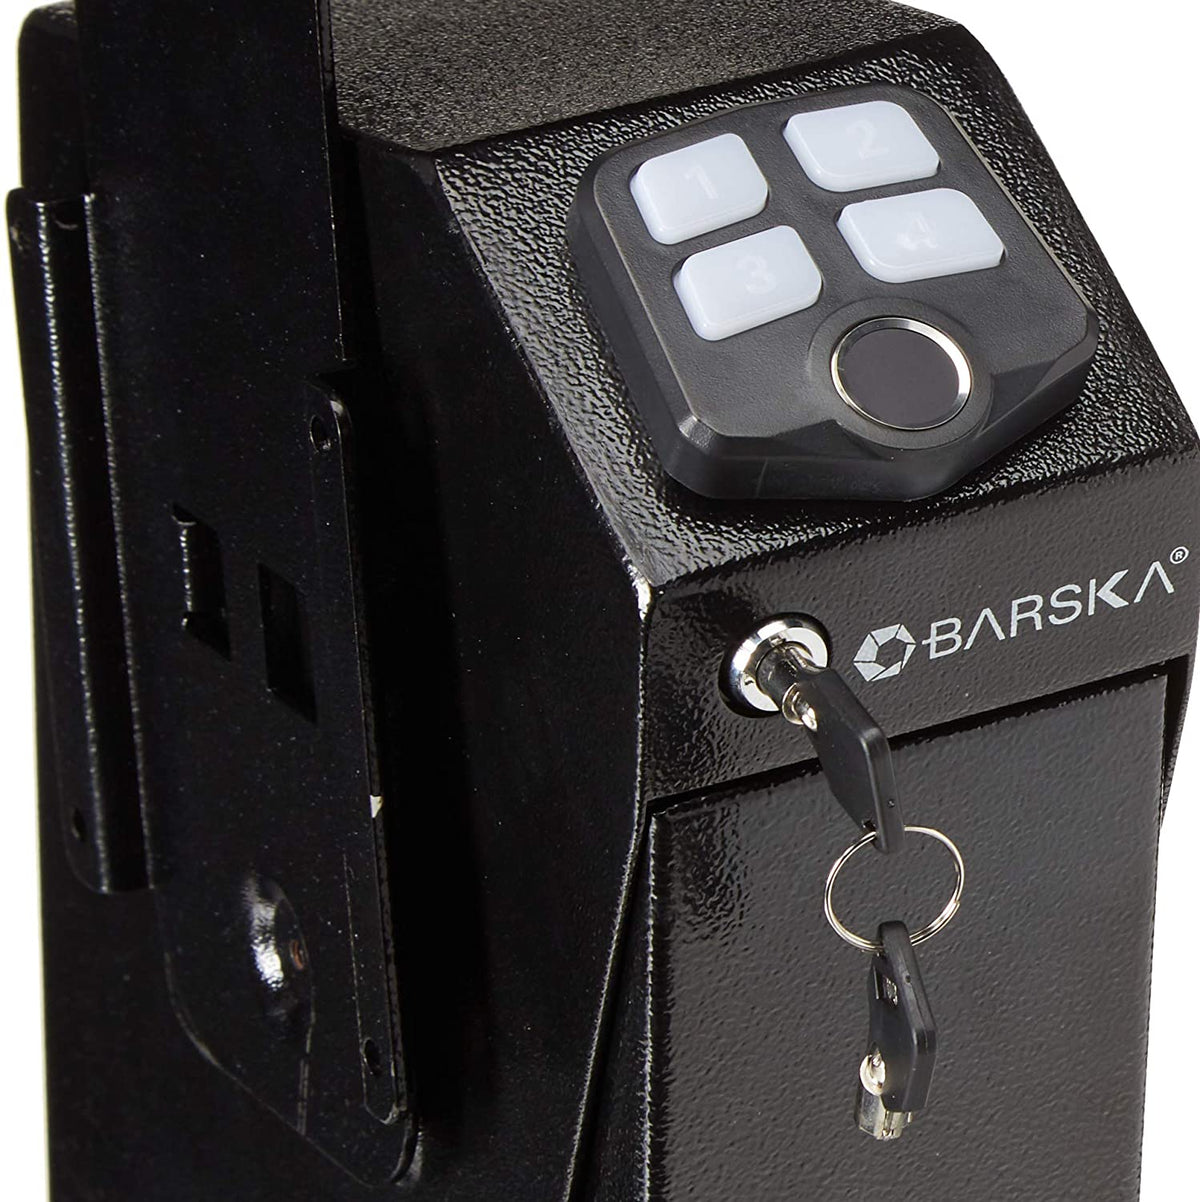 Handgun And Pistol Safes - Barska AX13094 Quick Access Handgun Desk Safe